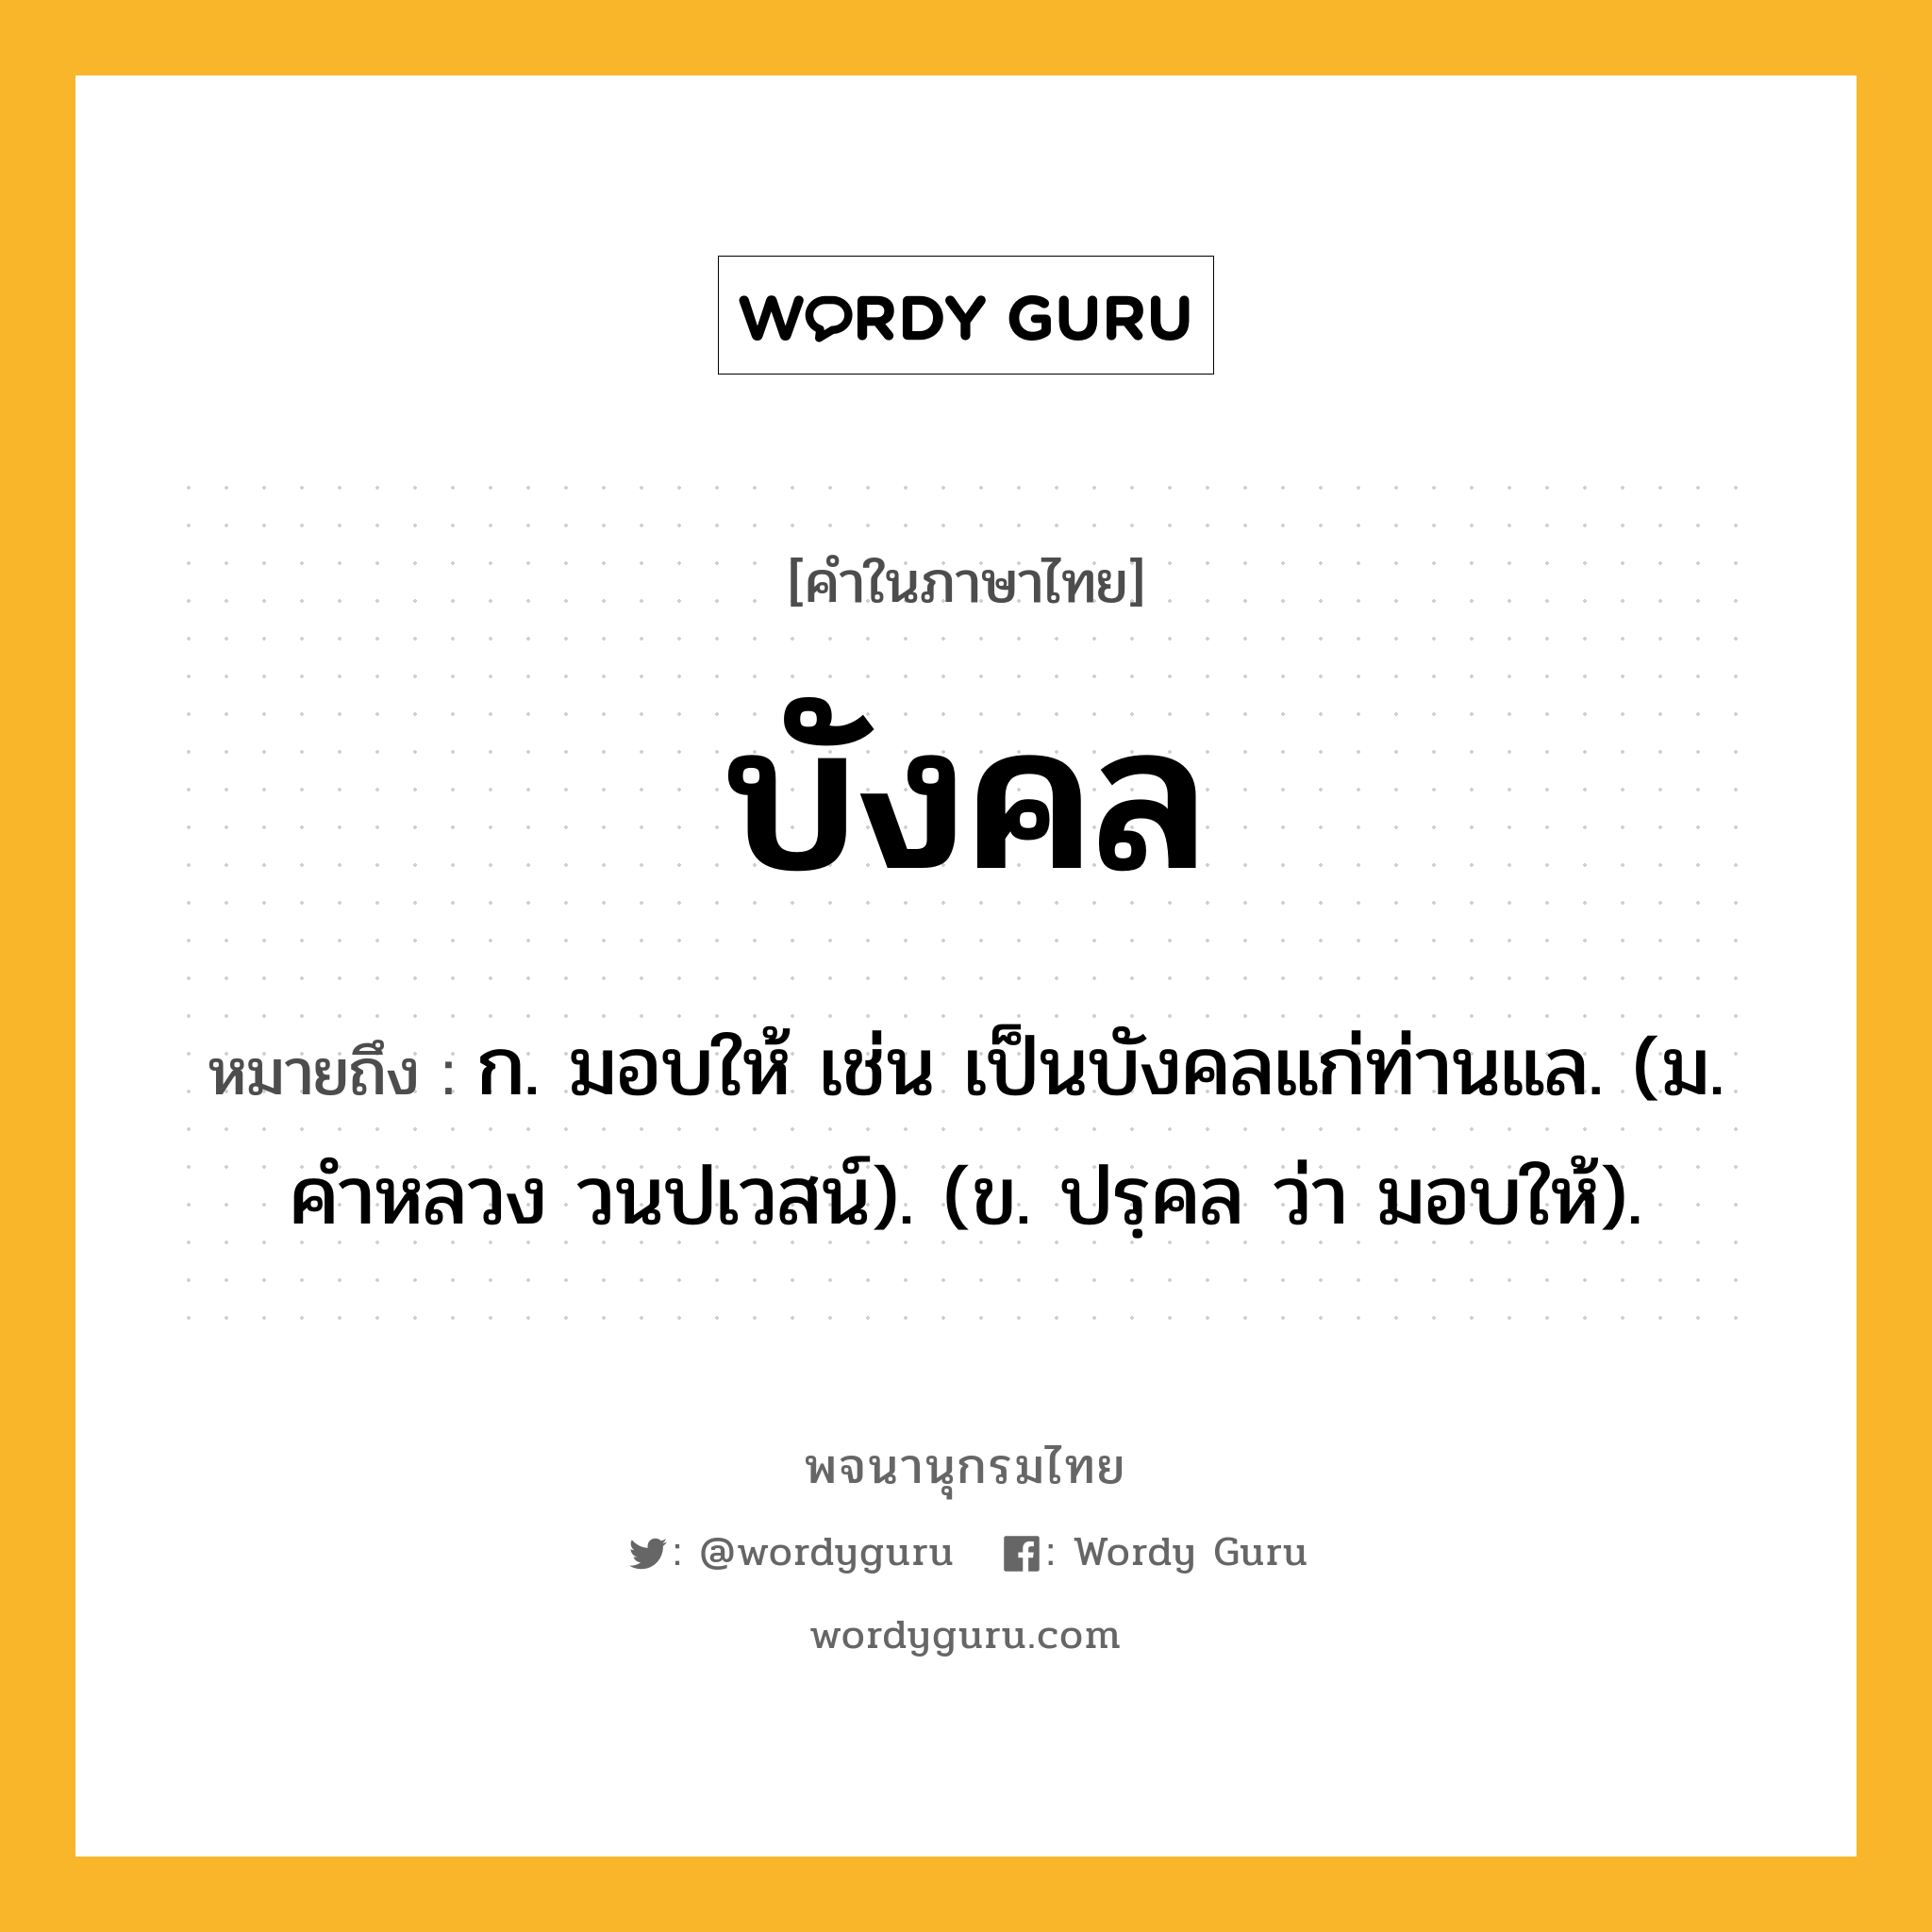 บังคล หมายถึงอะไร?, คำในภาษาไทย บังคล หมายถึง ก. มอบให้ เช่น เป็นบังคลแก่ท่านแล. (ม. คําหลวง วนปเวสน์). (ข. ปรฺคล ว่า มอบให้).